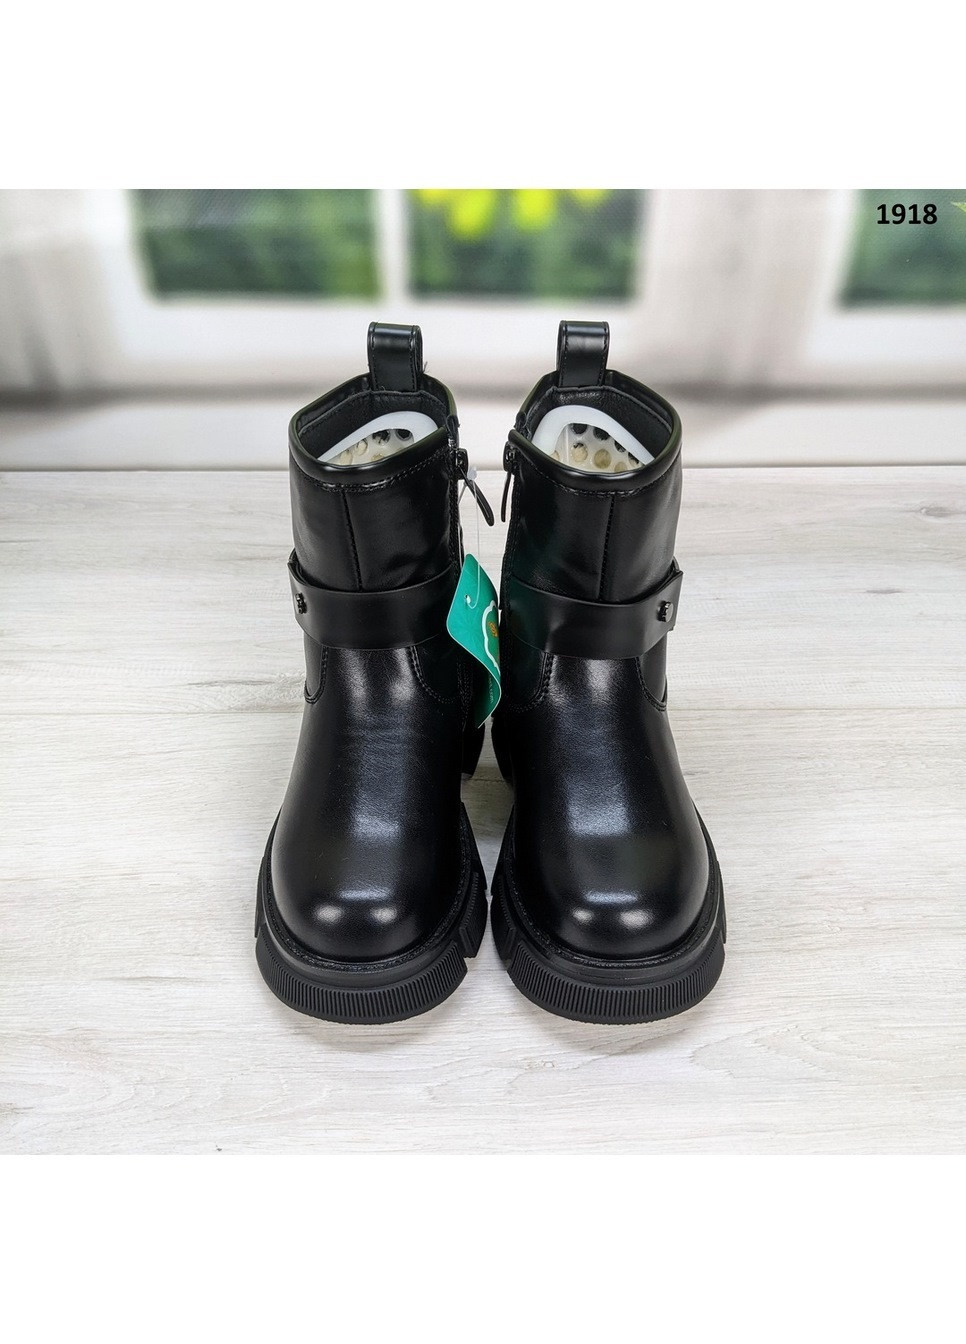 Черные повседневные зимние ботинки зимние детские для девочки Paliament